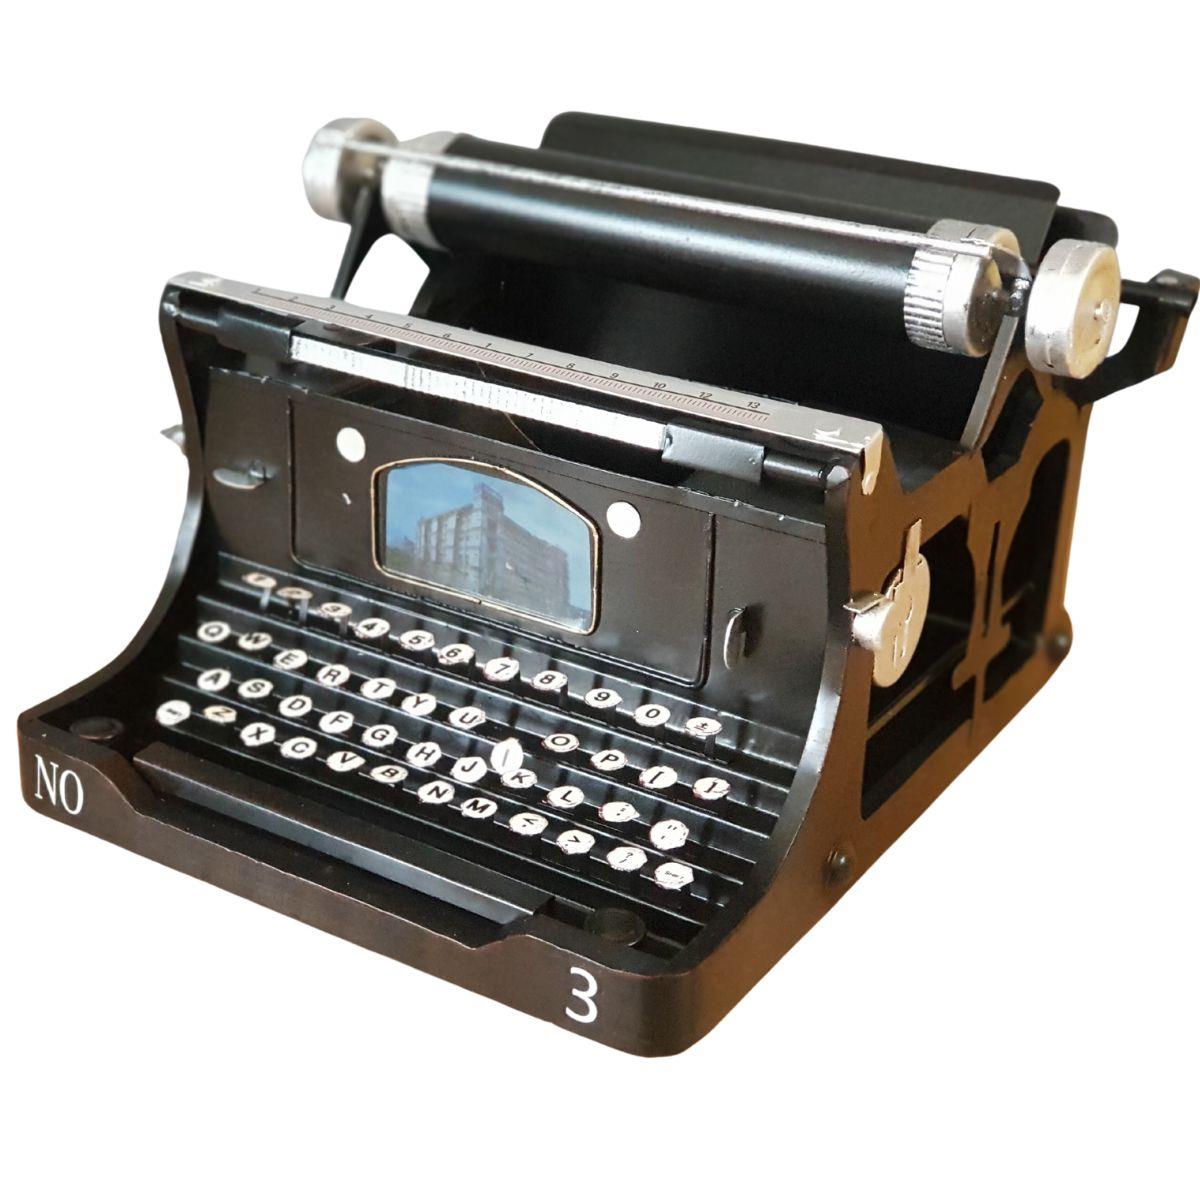 דגם מכונת כתיבה